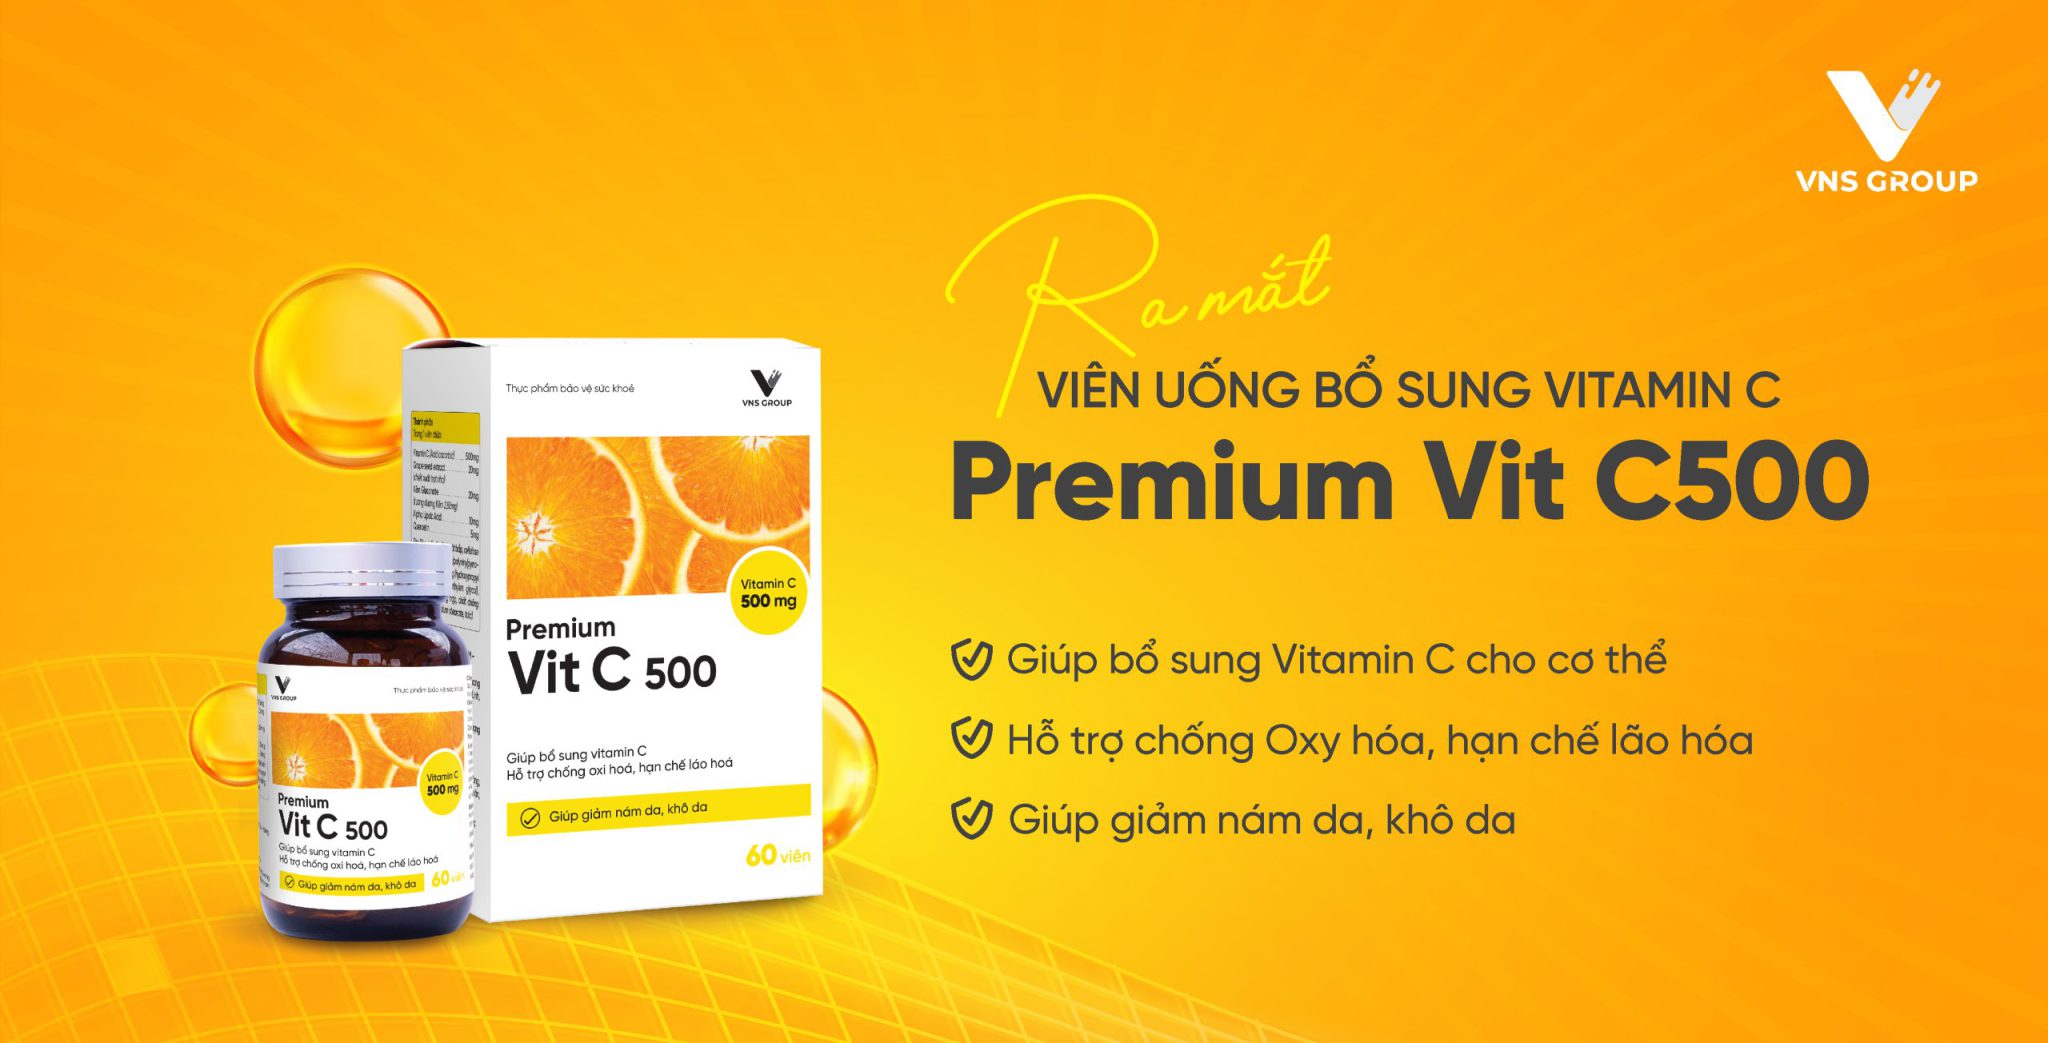 Ra mắt Premium Vit C500 – Viên uống bổ sung Vitamin C, tăng cường sức khỏe, hỗ trợ làm đẹp da hiệu quả!